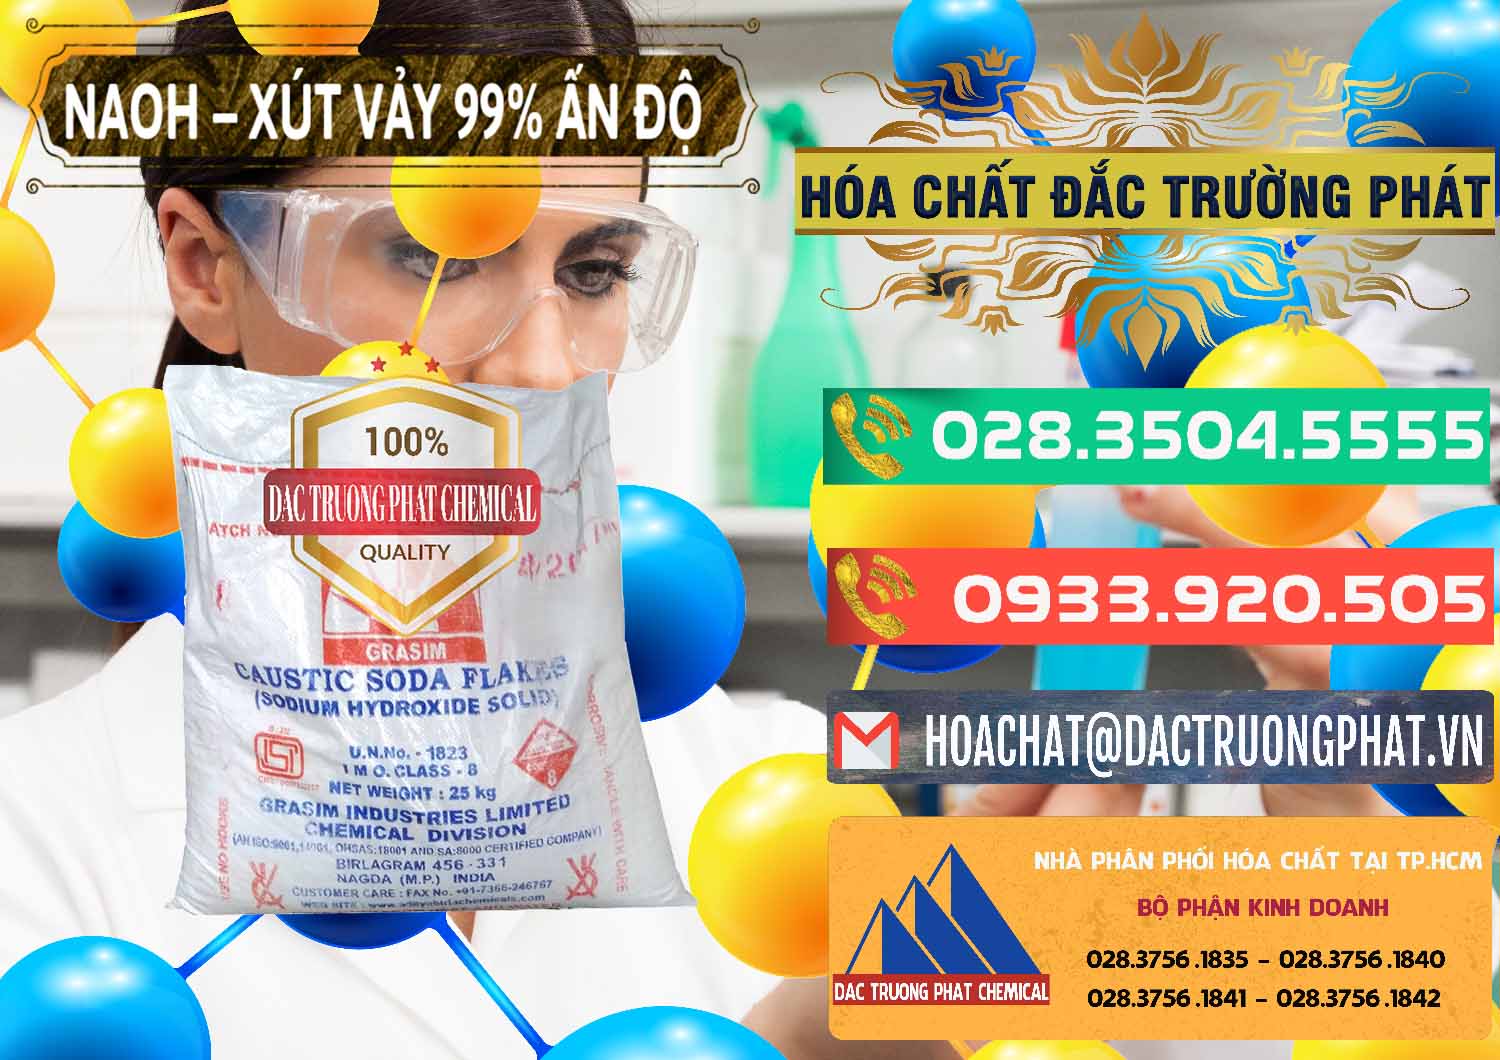 Đơn vị bán và cung ứng Xút Vảy - NaOH Vảy 99% Aditya Birla Grasim Ấn Độ India - 0171 - Nơi chuyên phân phối và nhập khẩu hóa chất tại TP.HCM - congtyhoachat.com.vn